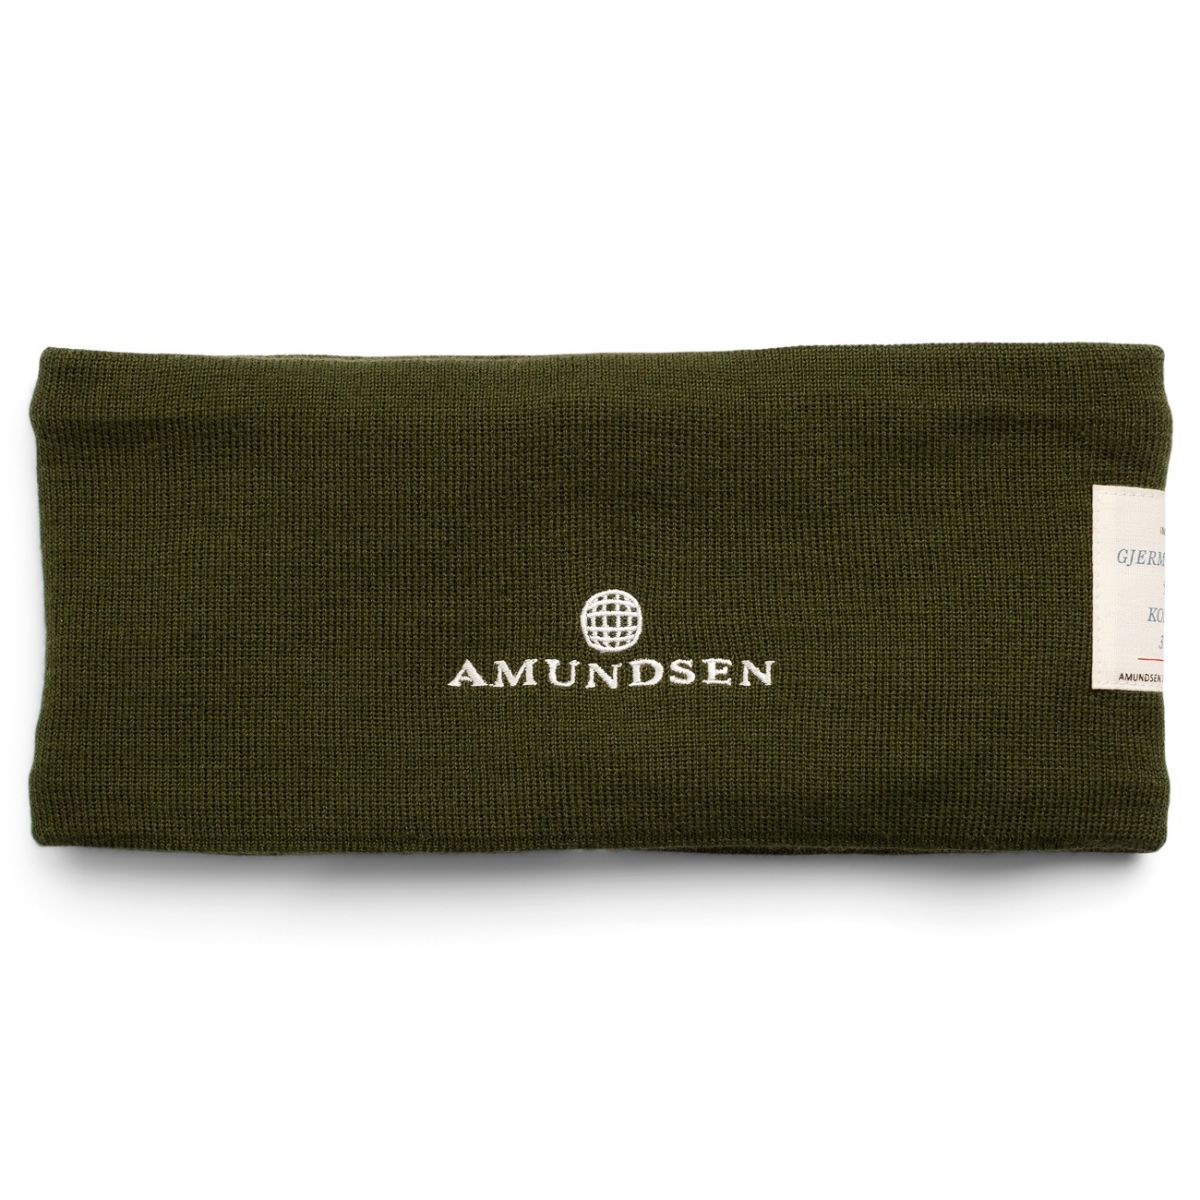 grønt pannebånd med amundsen-logo i front